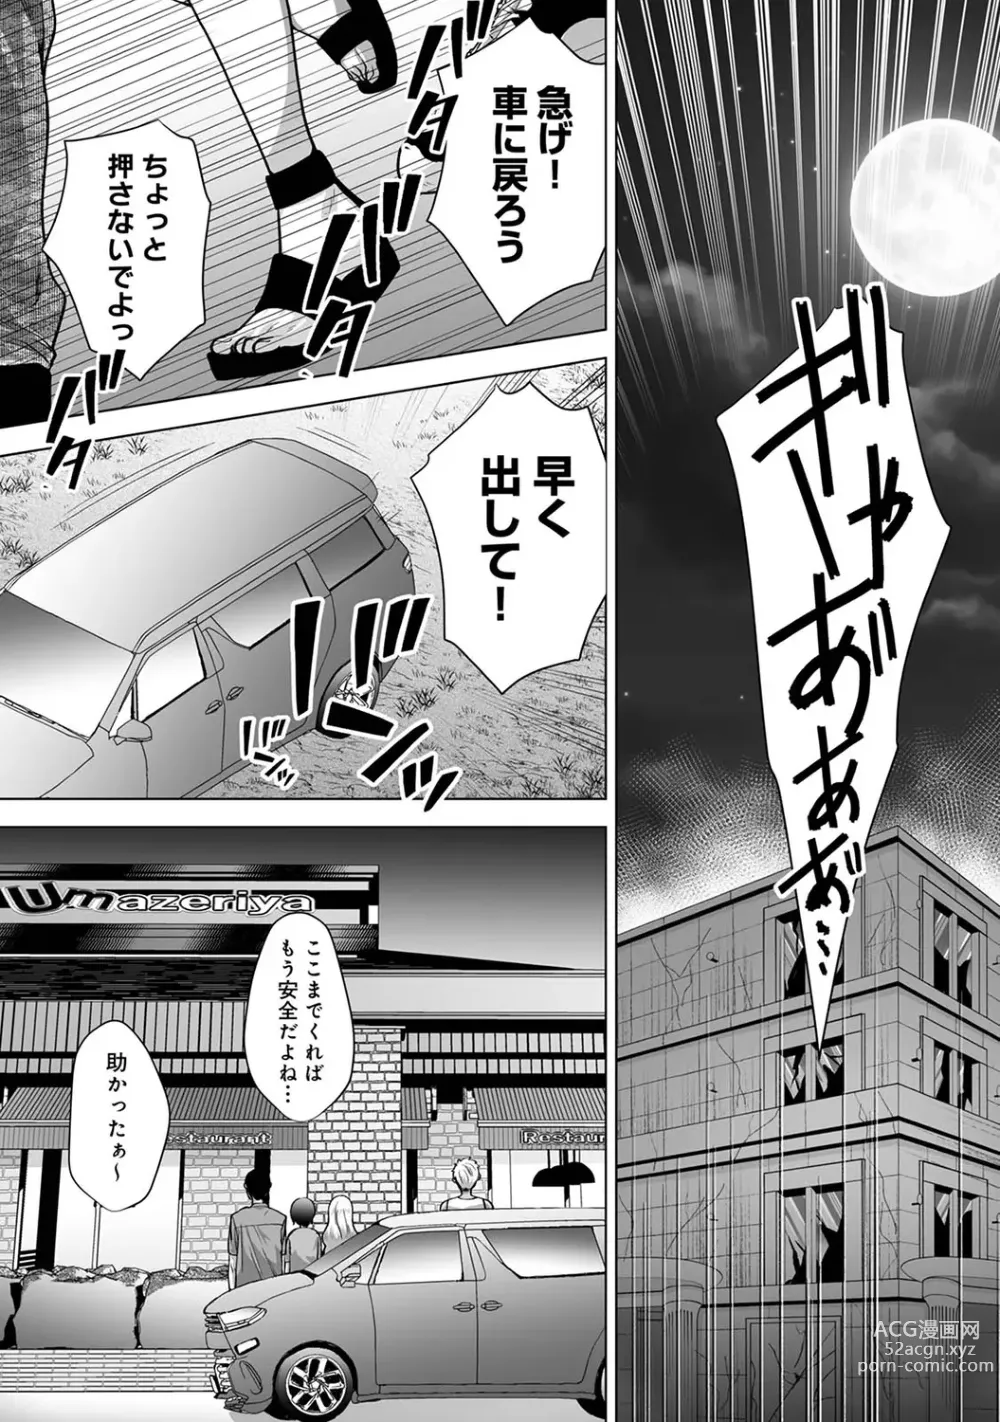 Page 23 of manga COMIC Ananga Ranga Vol. 98